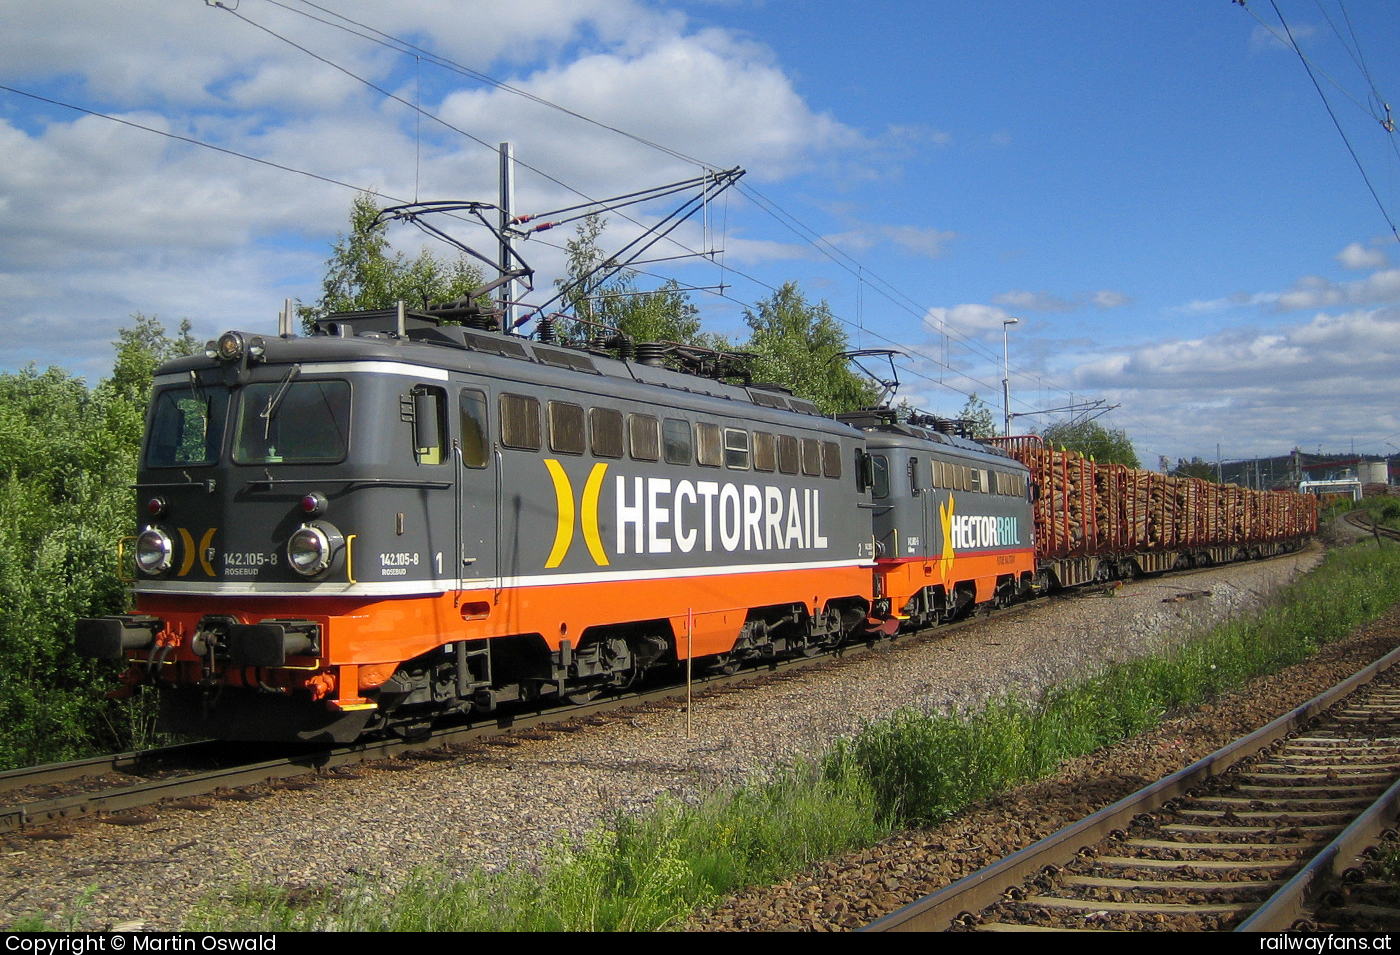 Hectorrail 142 105 in Timra - ex ÖBB 1142 558 - mit 142 002 ex ÖBB 1142 645.   Railwayfans